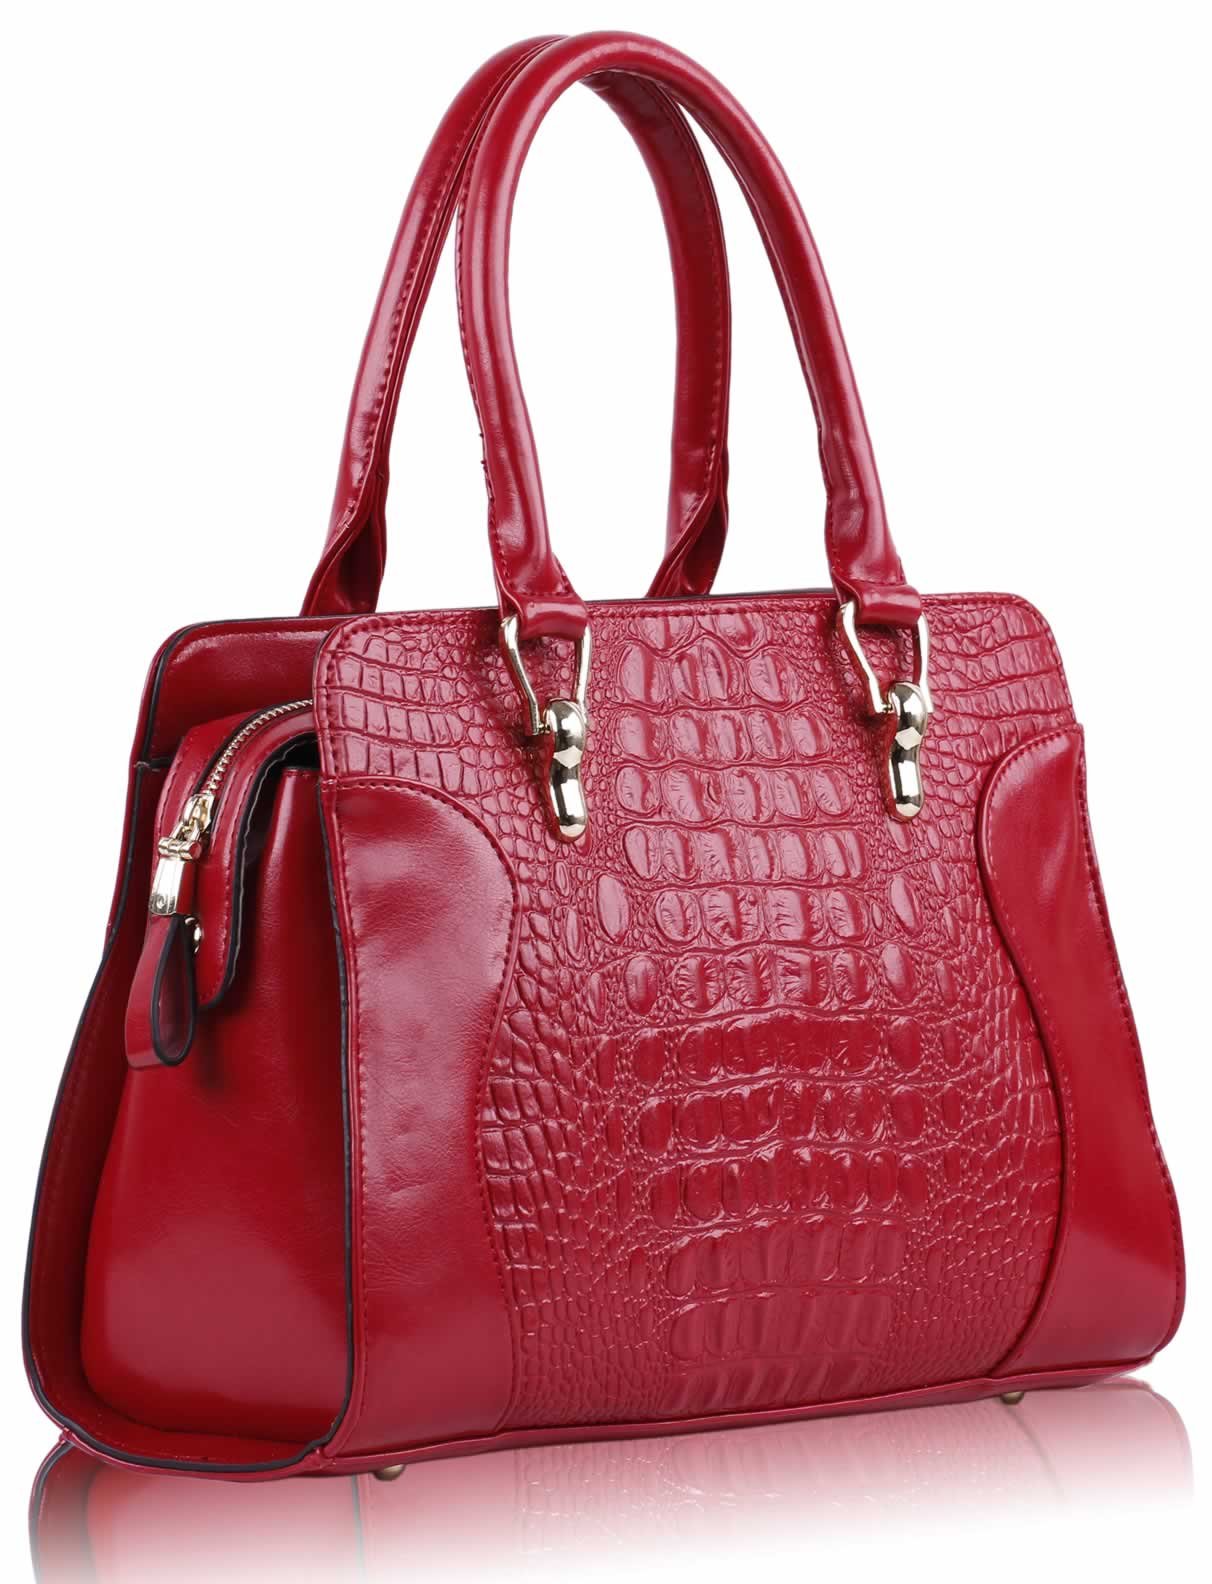 Red Croc Tote Bag